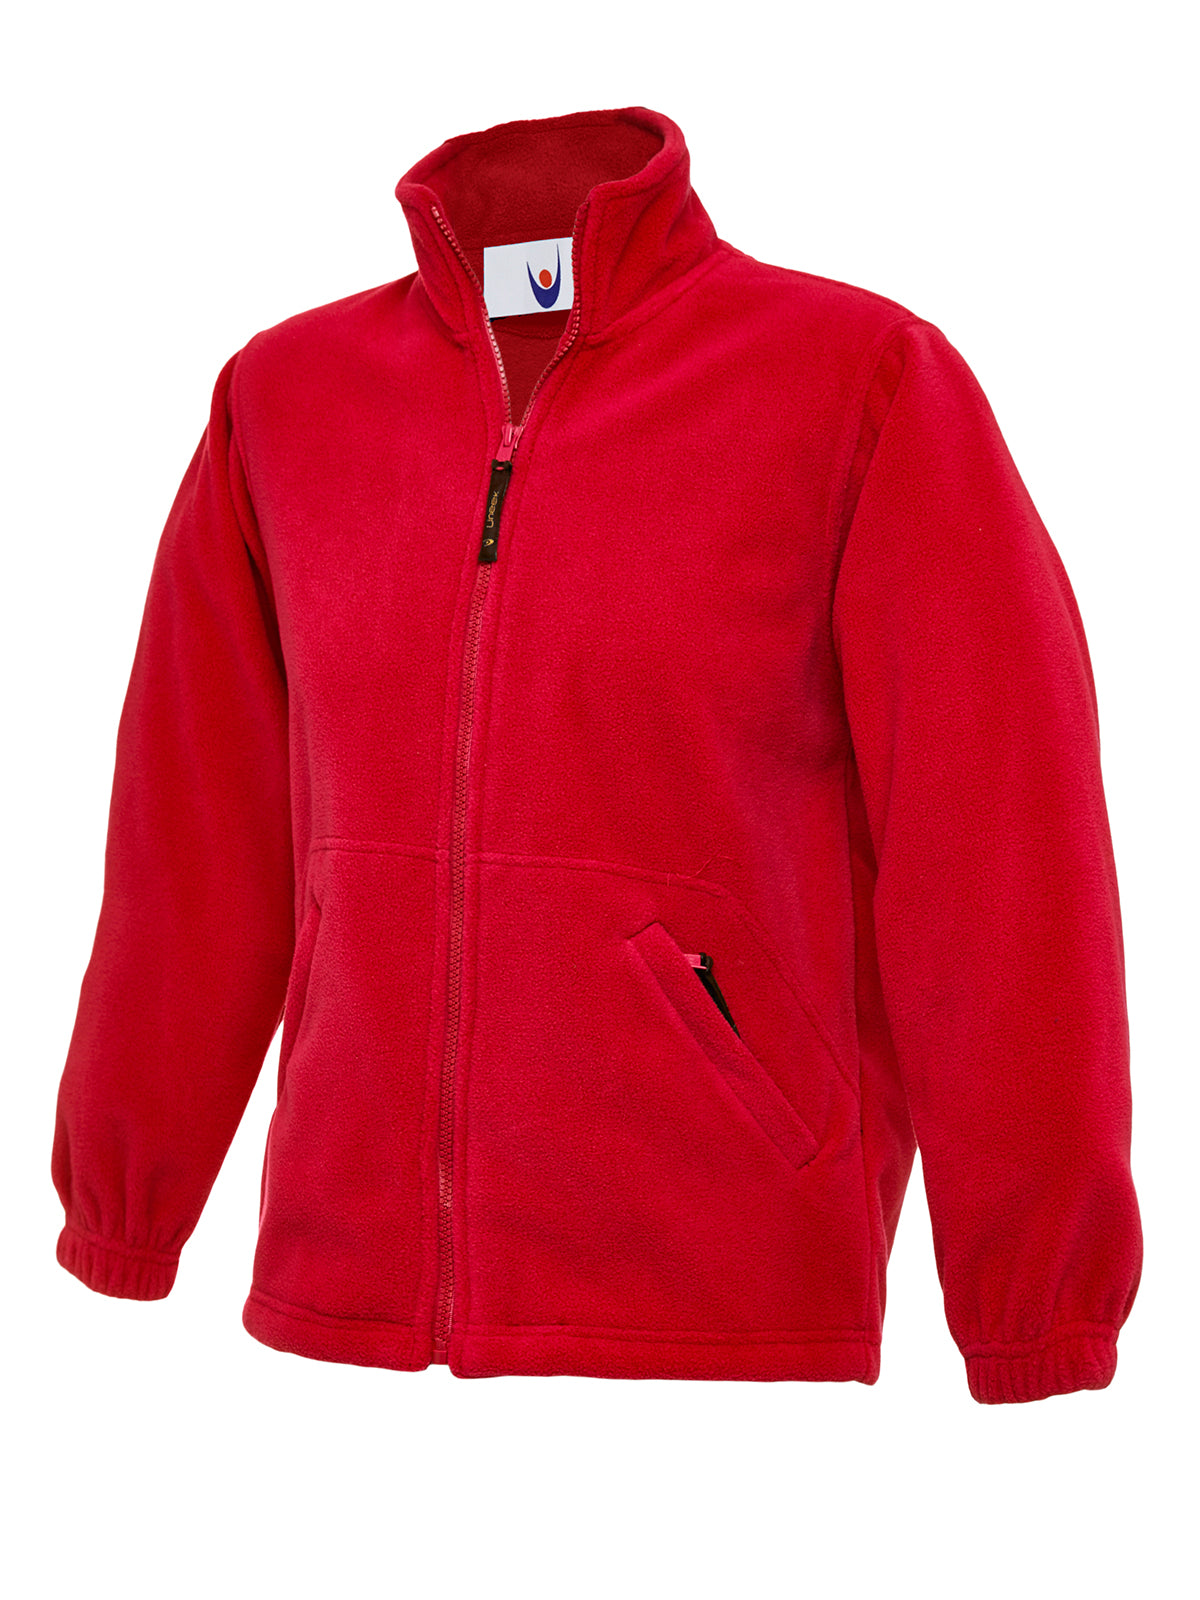 Uneek Childrens Full Zip Micro Fleece Jacket UC603 - Red